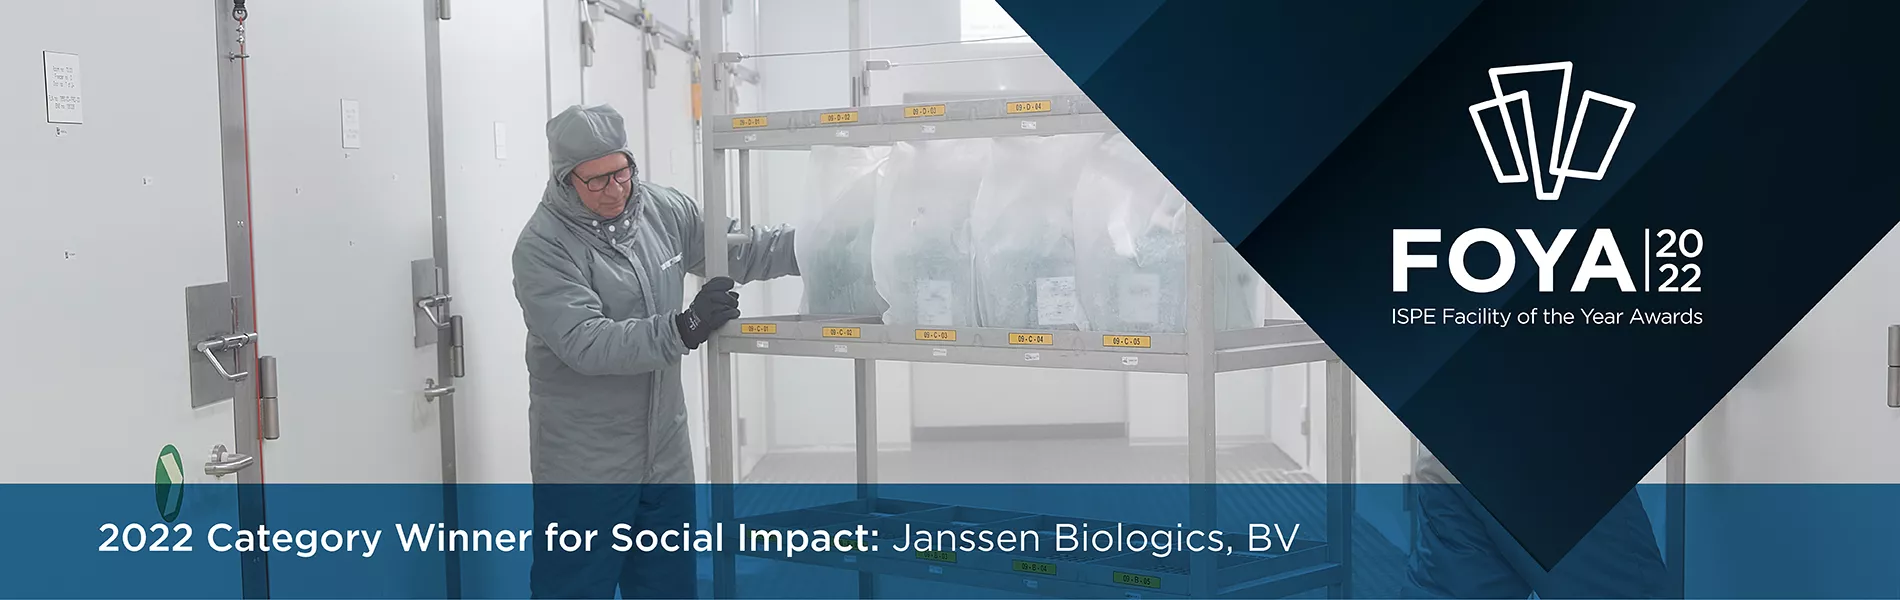 2022 Category Winners for Social Impact: Janssen Biologics